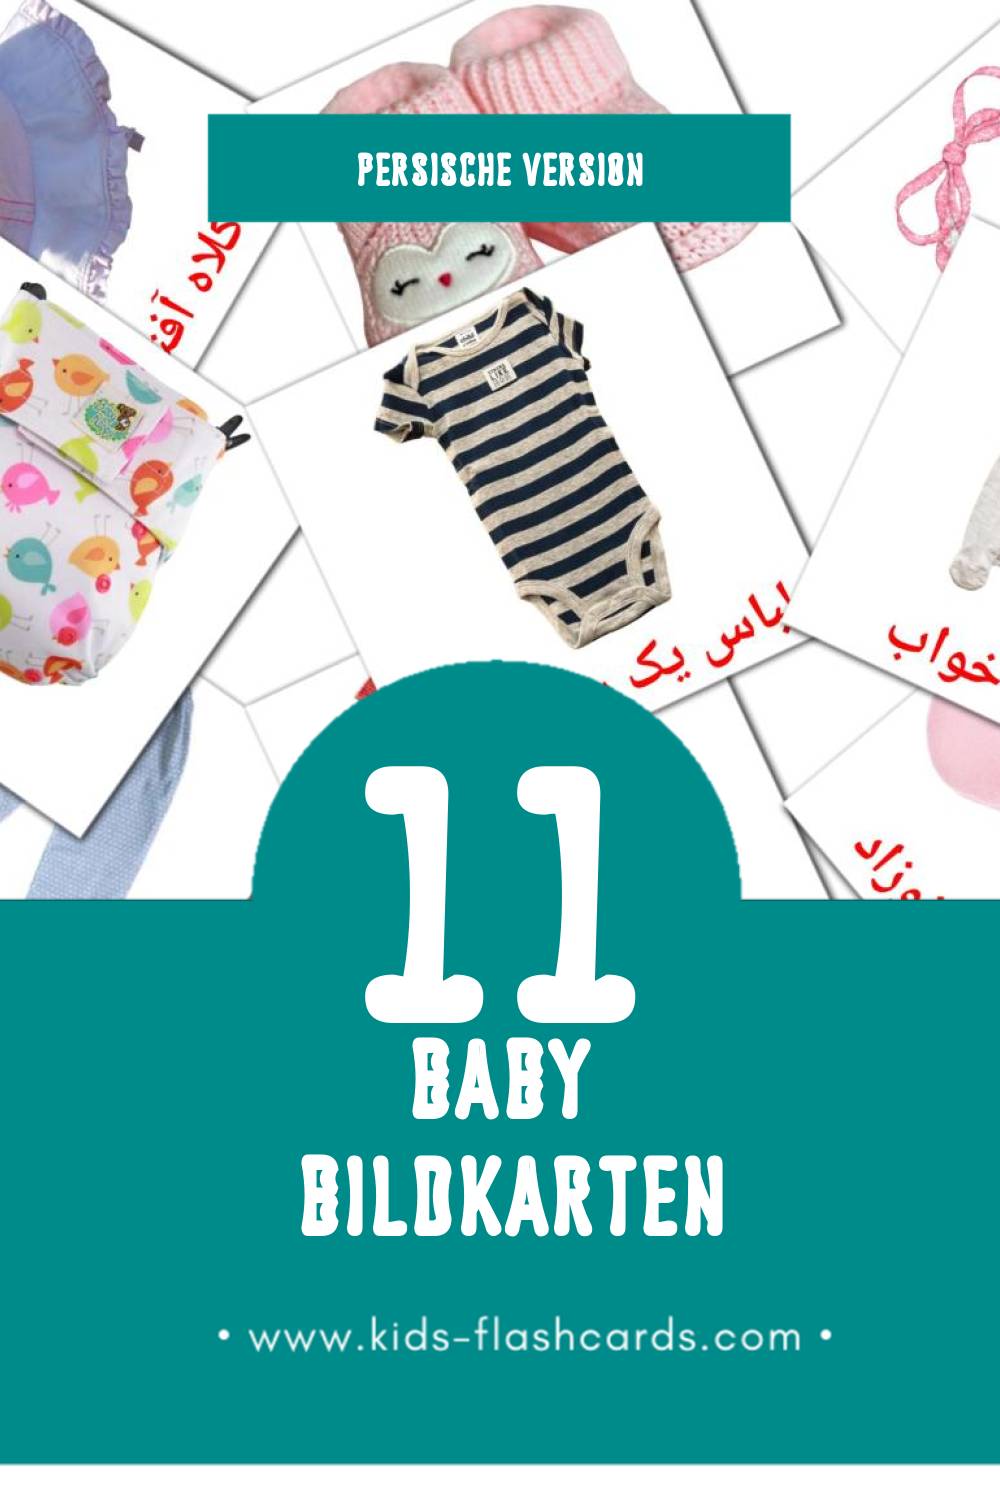 Visual بچه Flashcards für Kleinkinder (11 Karten in Persisch)